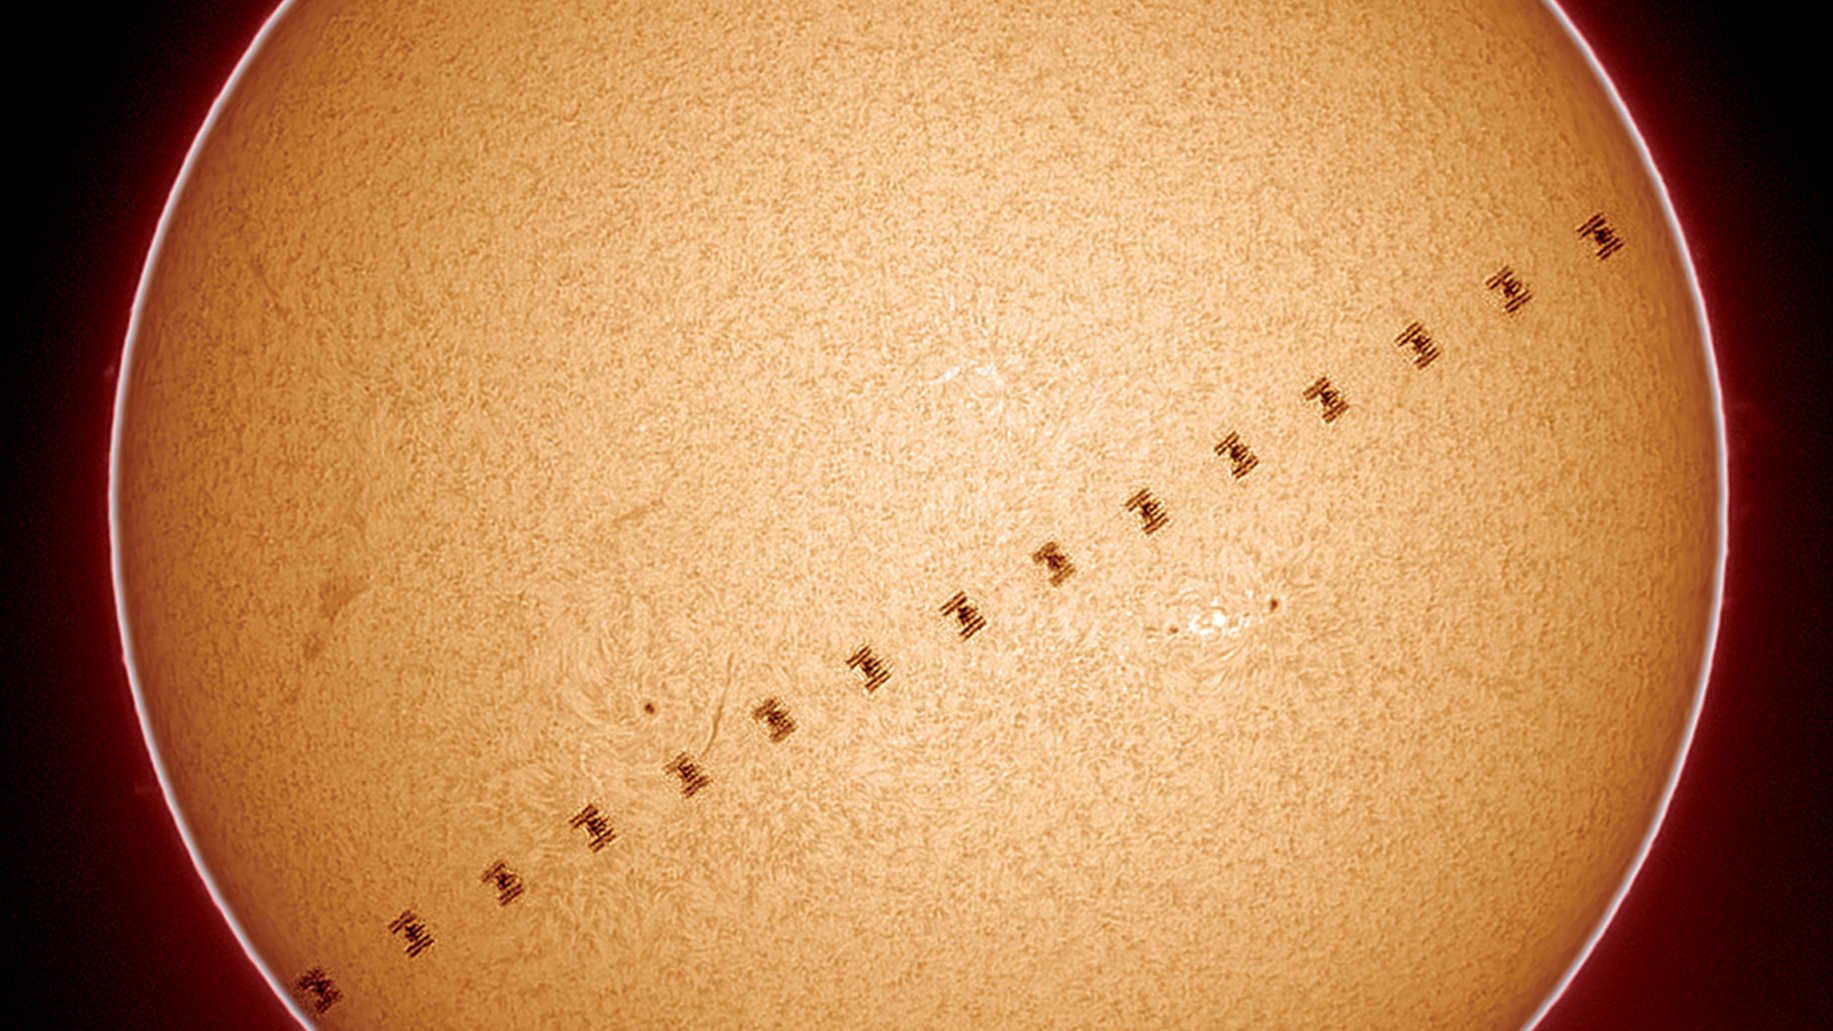 Il transito della ISS avvenuto il 17/06/2017 alle 18:57:03 documentato in luce Hα, quando il Sole si trovava a 64,7 gradi di altezza nel cielo australe. La distanza della ISS dal punto di osservazione era di 451,6 chilometri, quindi il transito è durato appena 0,6 secondi e la stazione orbitante è apparsa di dimensioni corrispondenti. È stato usato un telescopio Coronado Solarmax60, mentre il resto dell’attrezzatura è riportato nell’immagine 3. Lo scatto è il risultato della combinazione di 16 immagini. U. Dittler